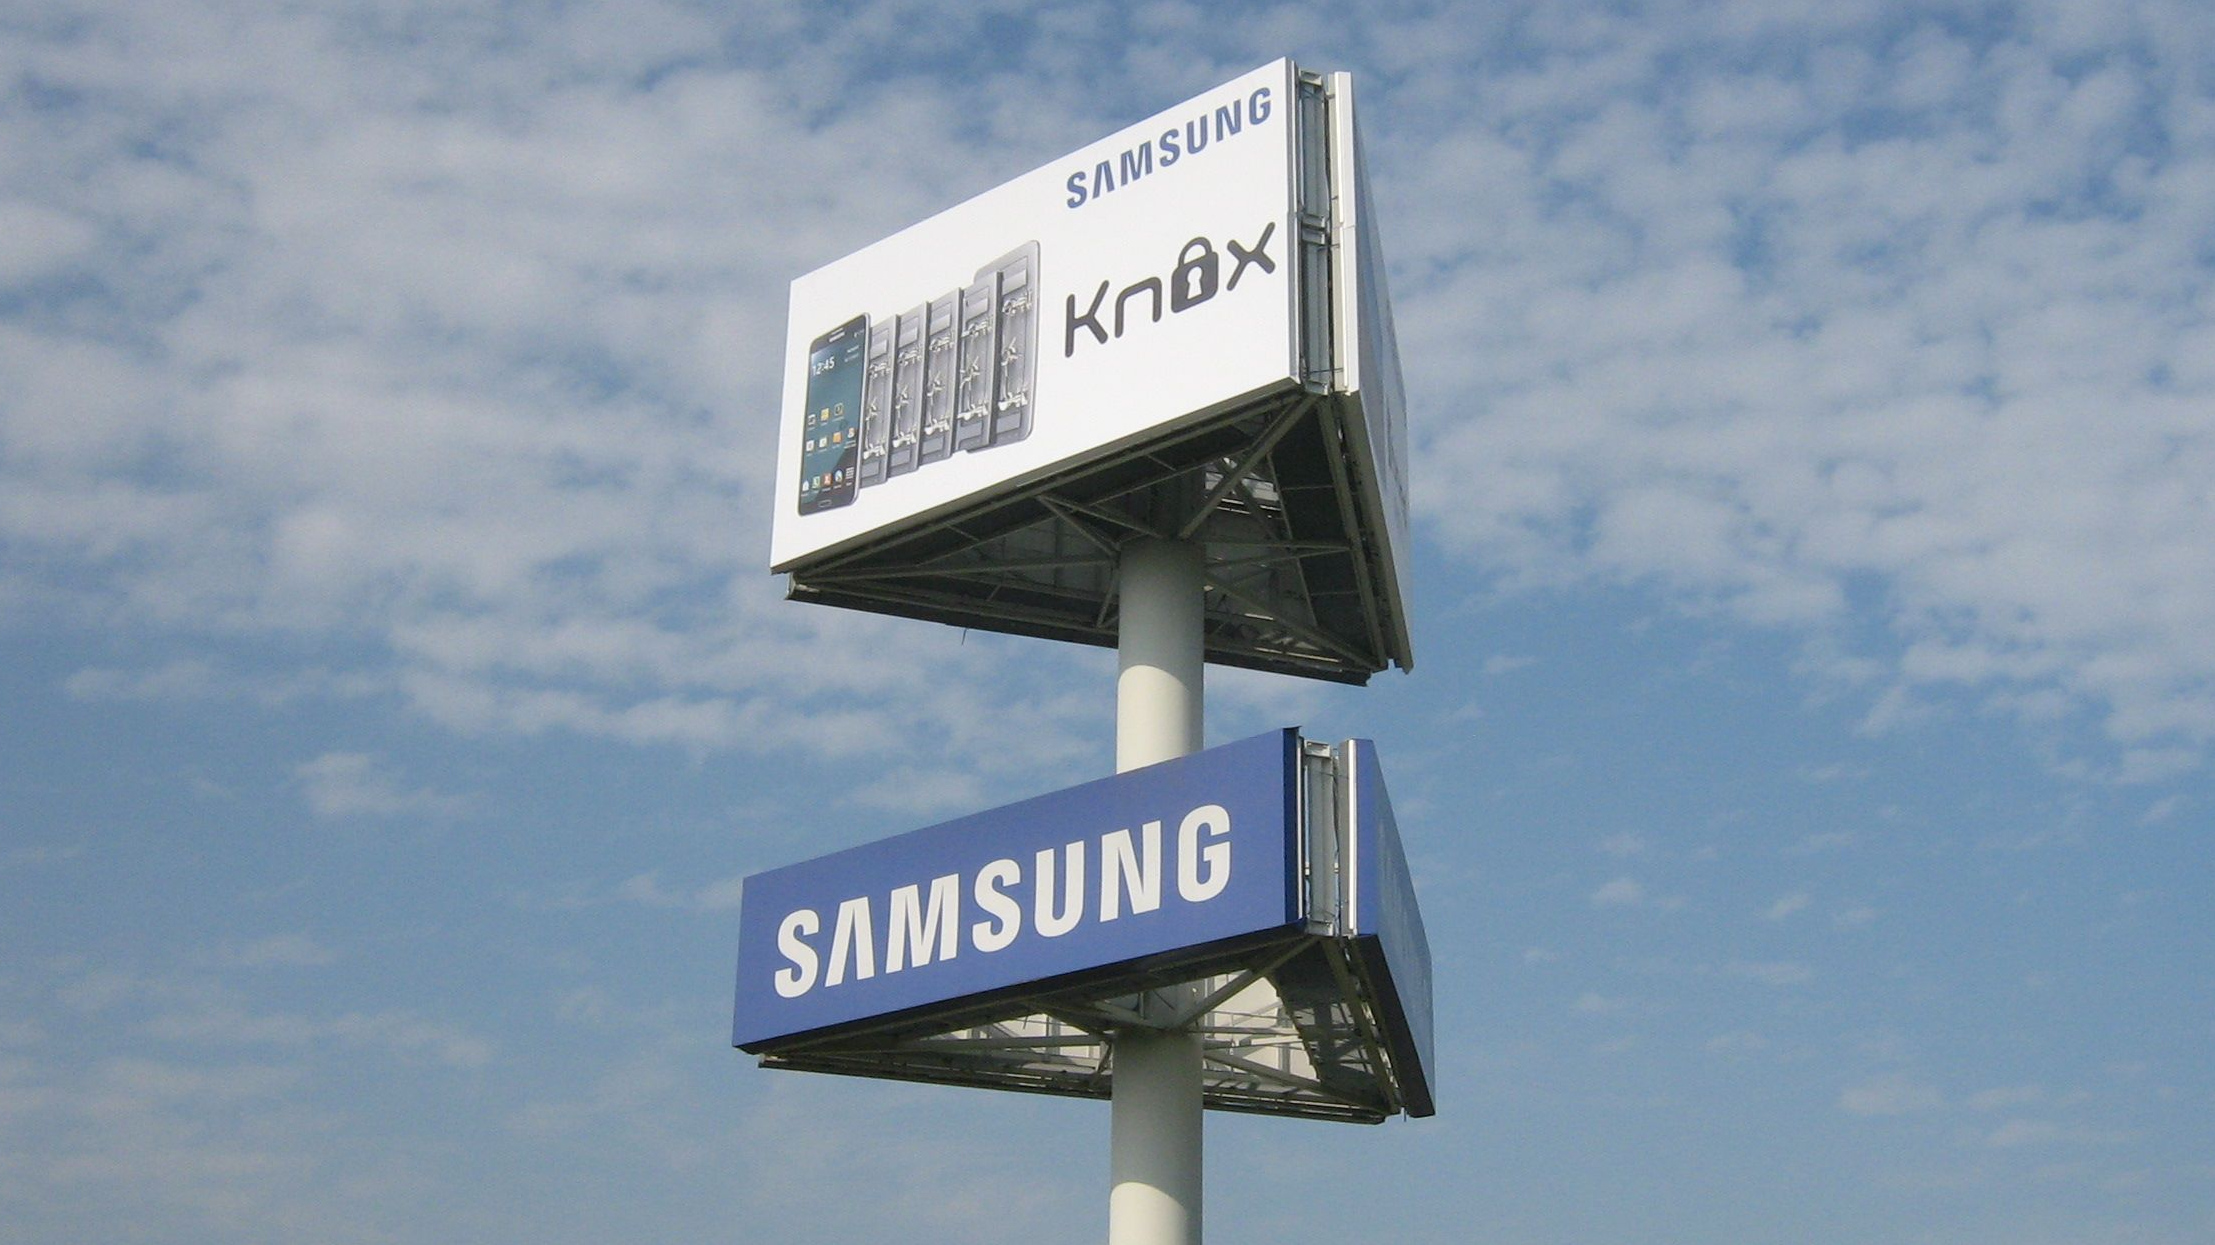 Samsung KNOX advert